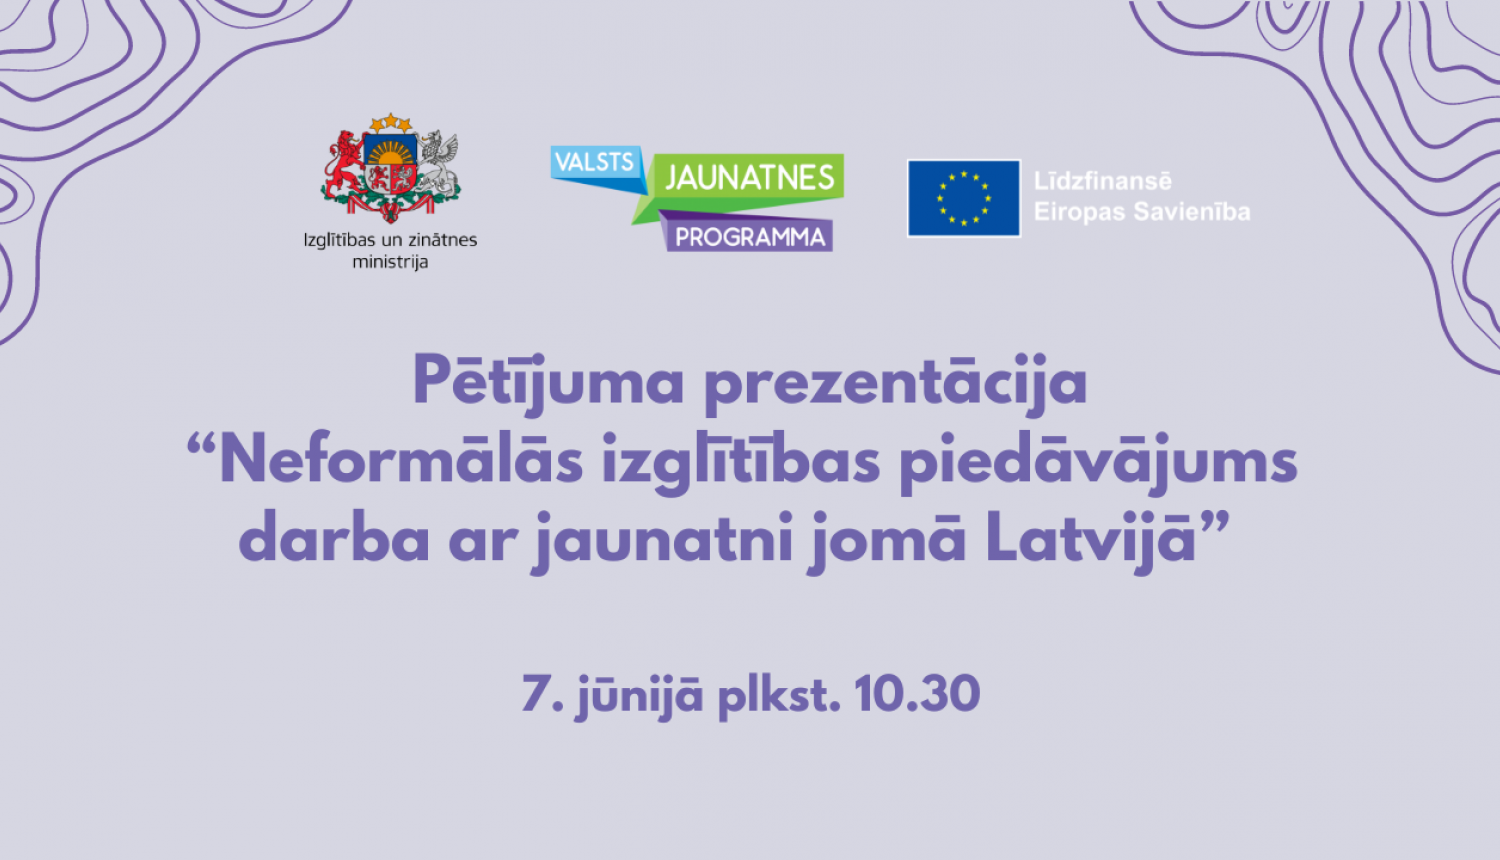 Uz violeta fona IZM, logo  Jaunatnes programmas un ES līdzfinansējuma logo un uzraksts pētījuma prezentācija “Neformālās izglītības piedāvājums darba ar jaunatni jomā Latvijā”